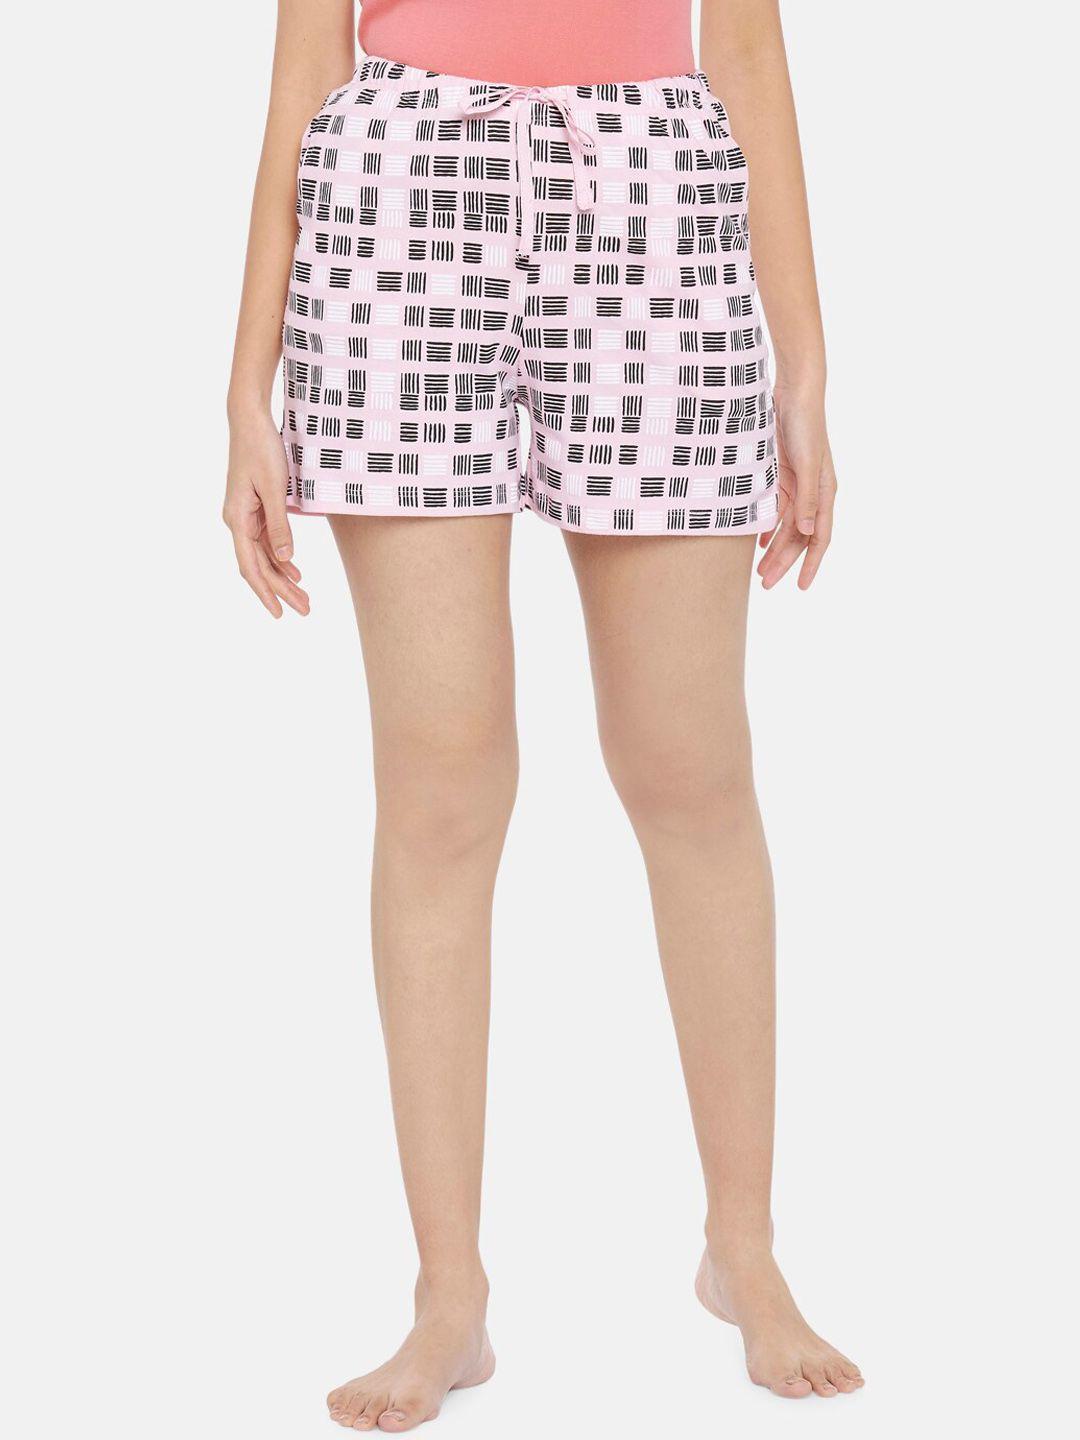 dreamz by pantaloons women pink printed regular lounge shorts